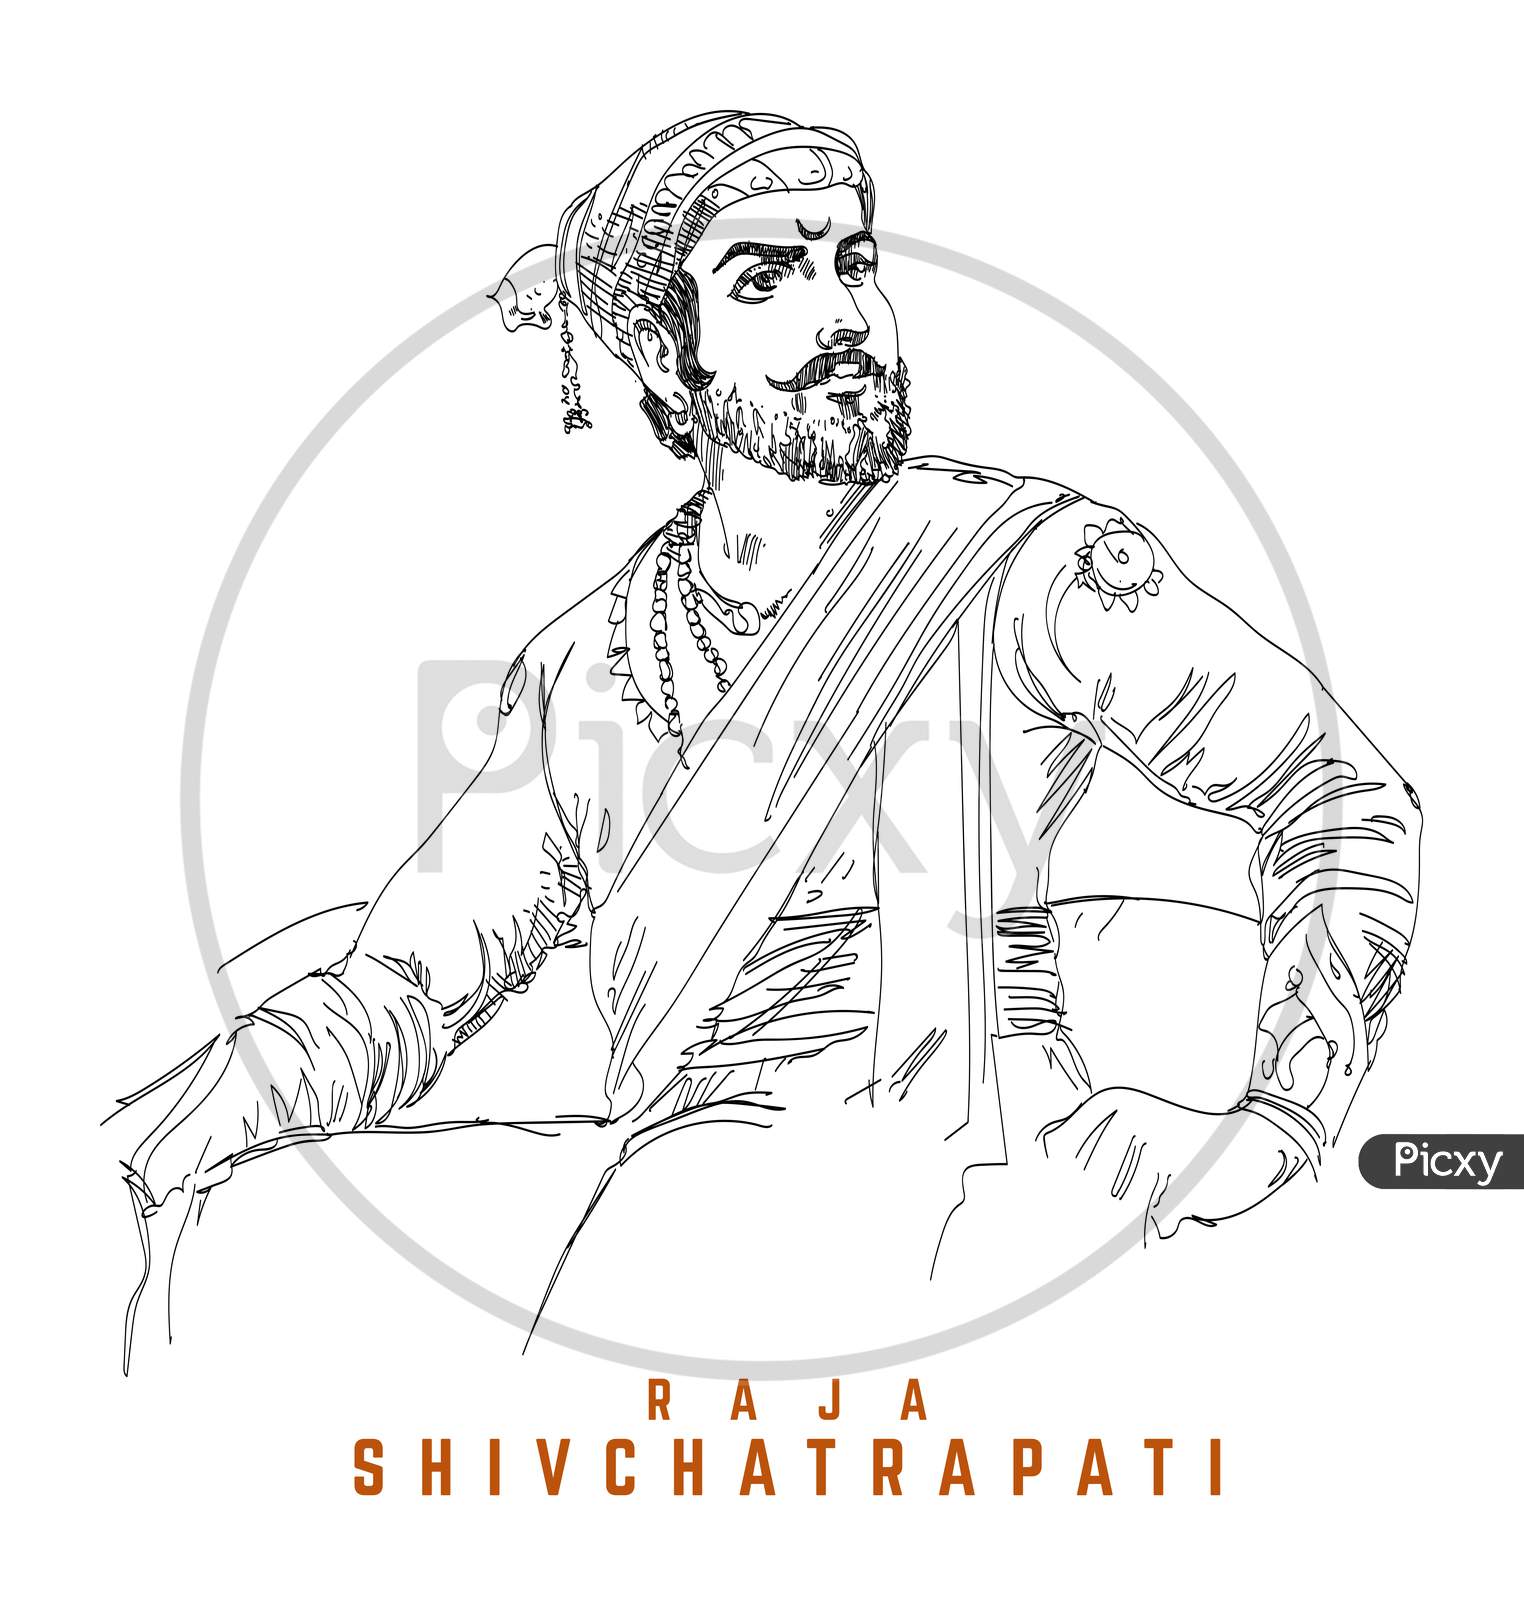 Raja Shivchattrapati